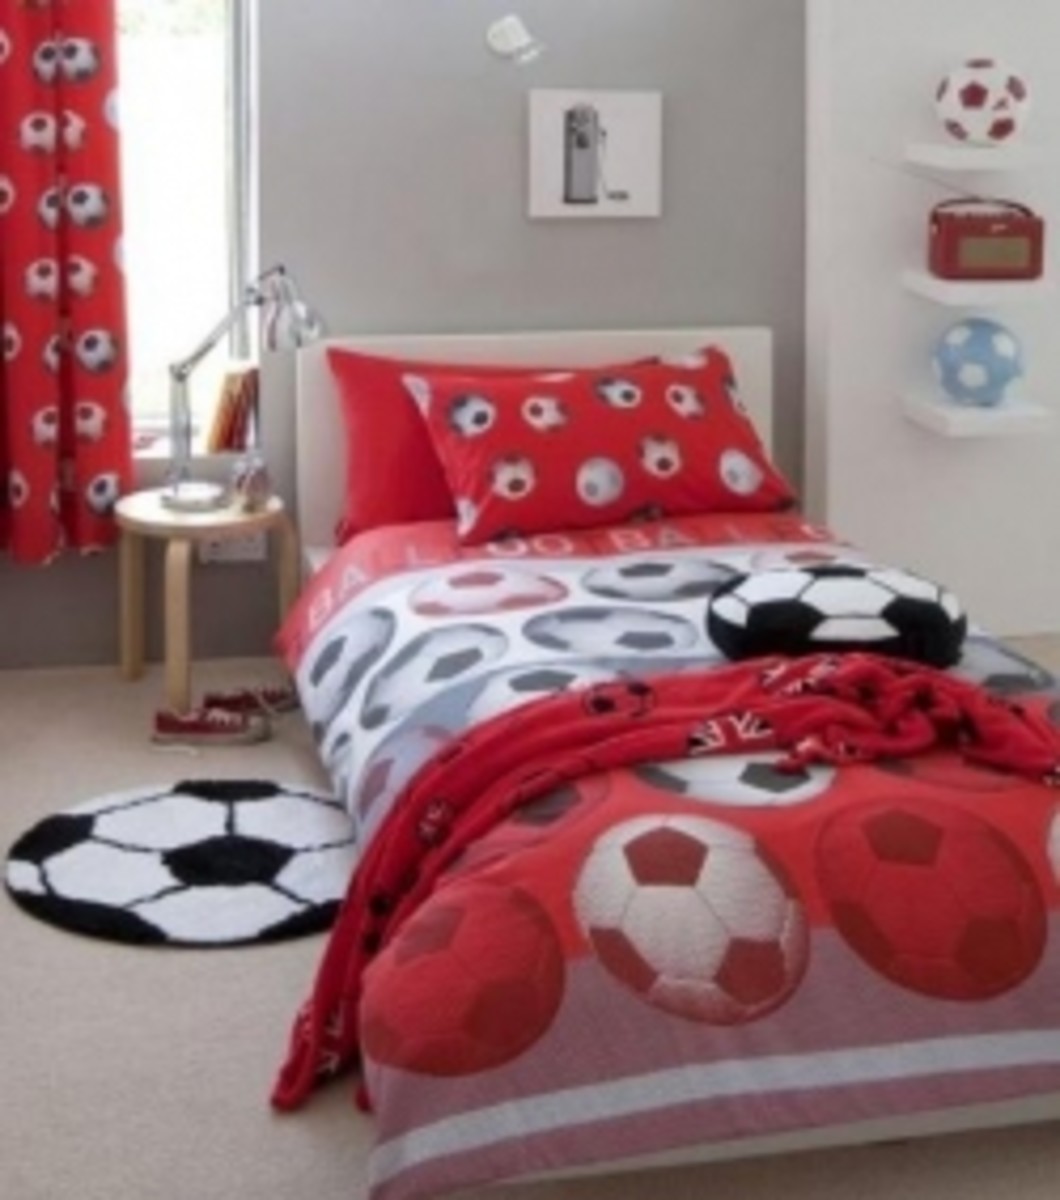 Soccer Ball Bedroom Theme